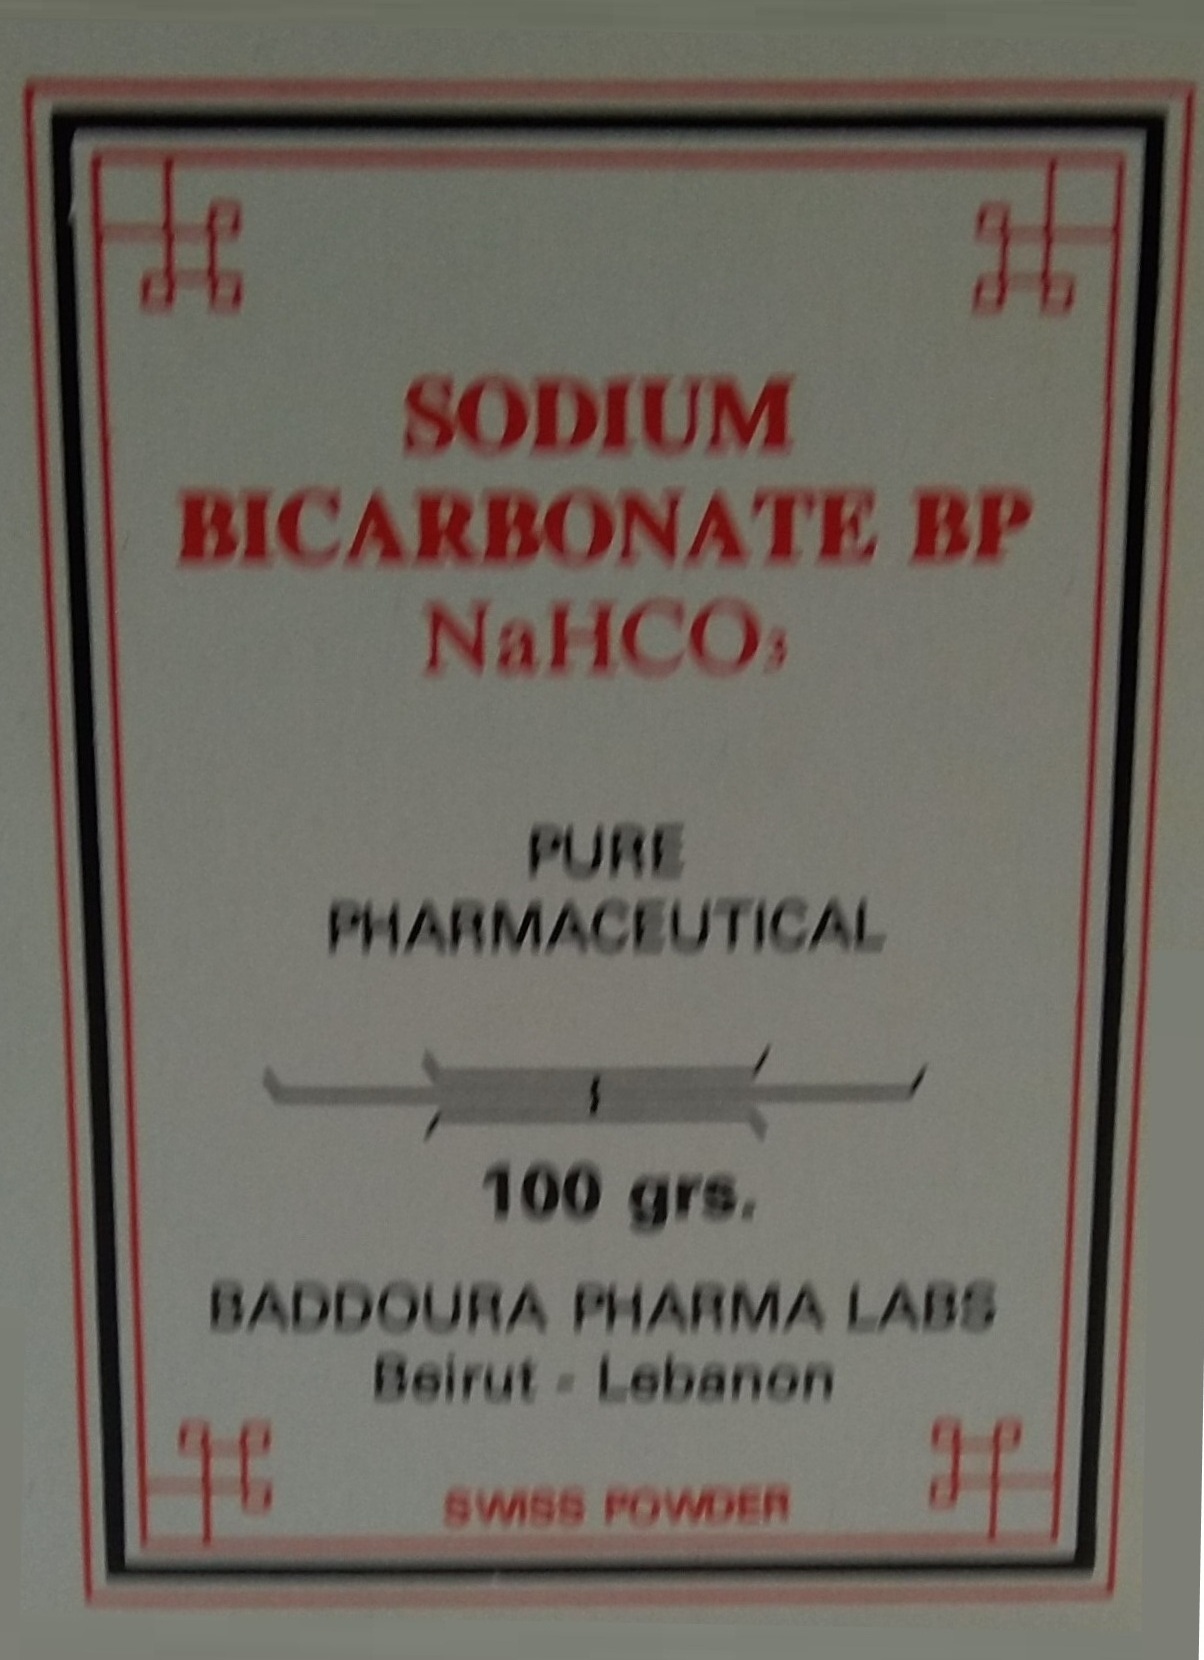 Sodium Bicarbonate Baddoura